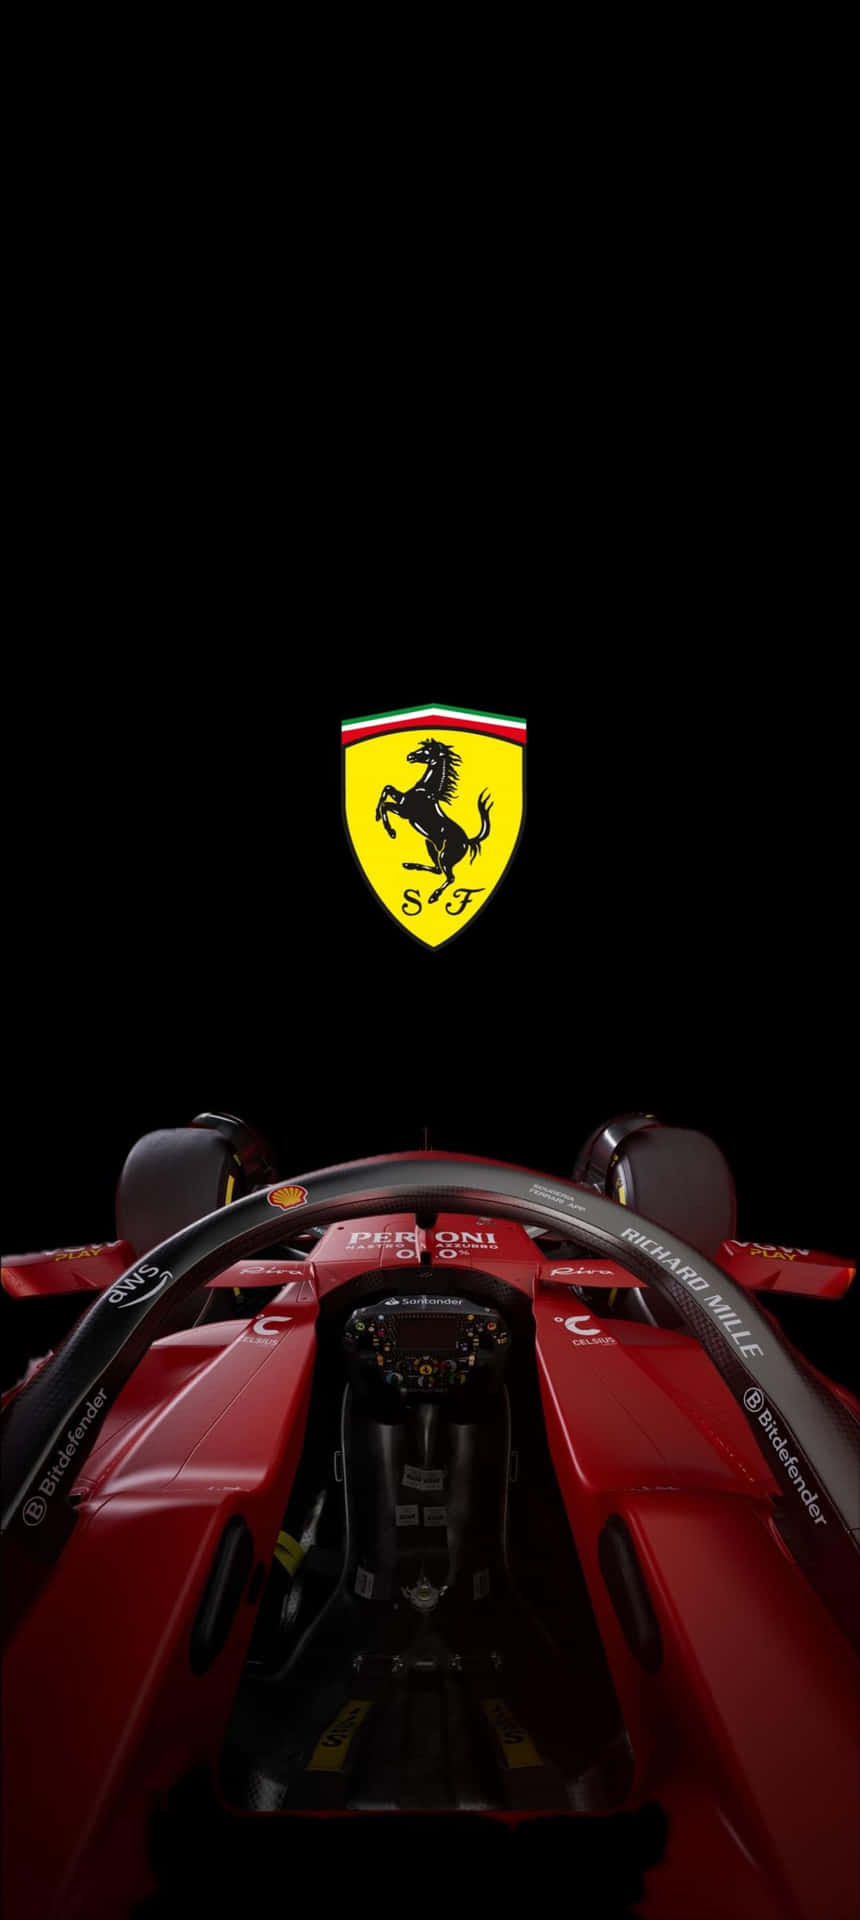 Ferrari F1 Cockpit Viewi Phone Wallpaper Wallpaper